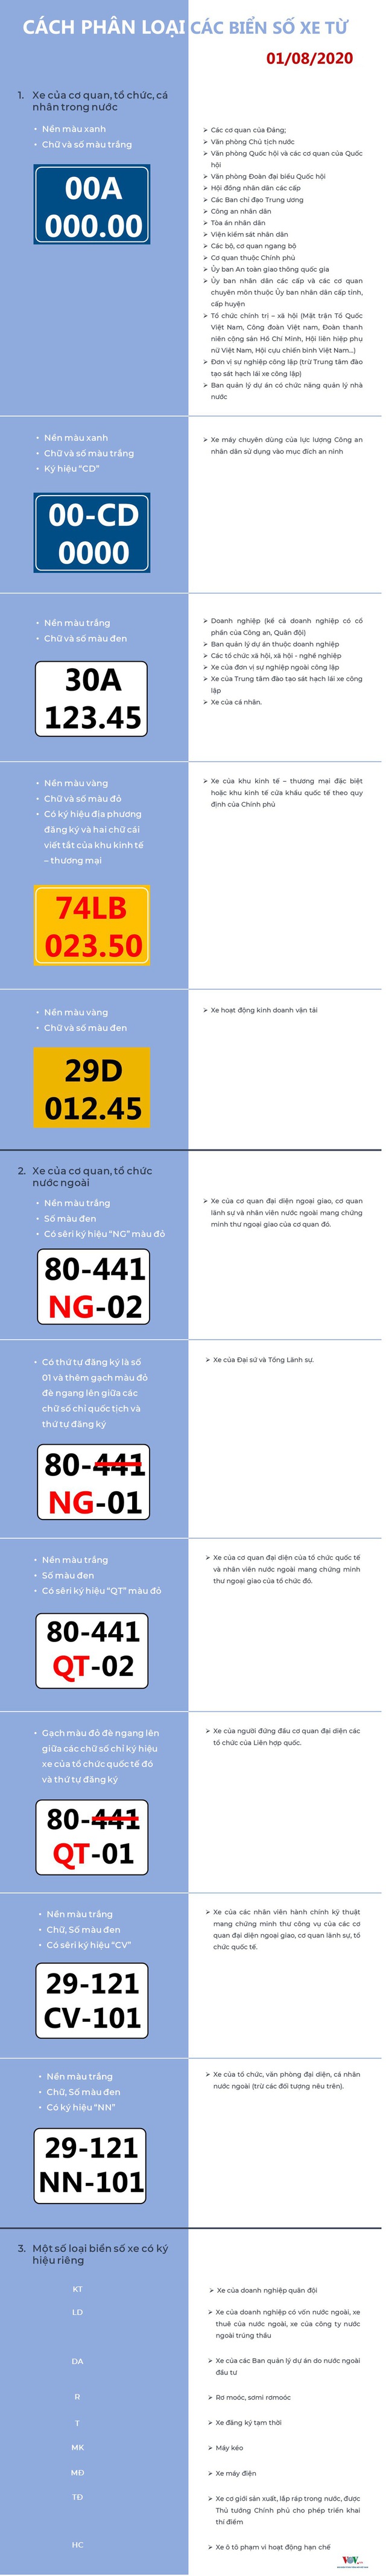 Cách phân biệt các loại biển số xe từ 1/8 - Ảnh 1.